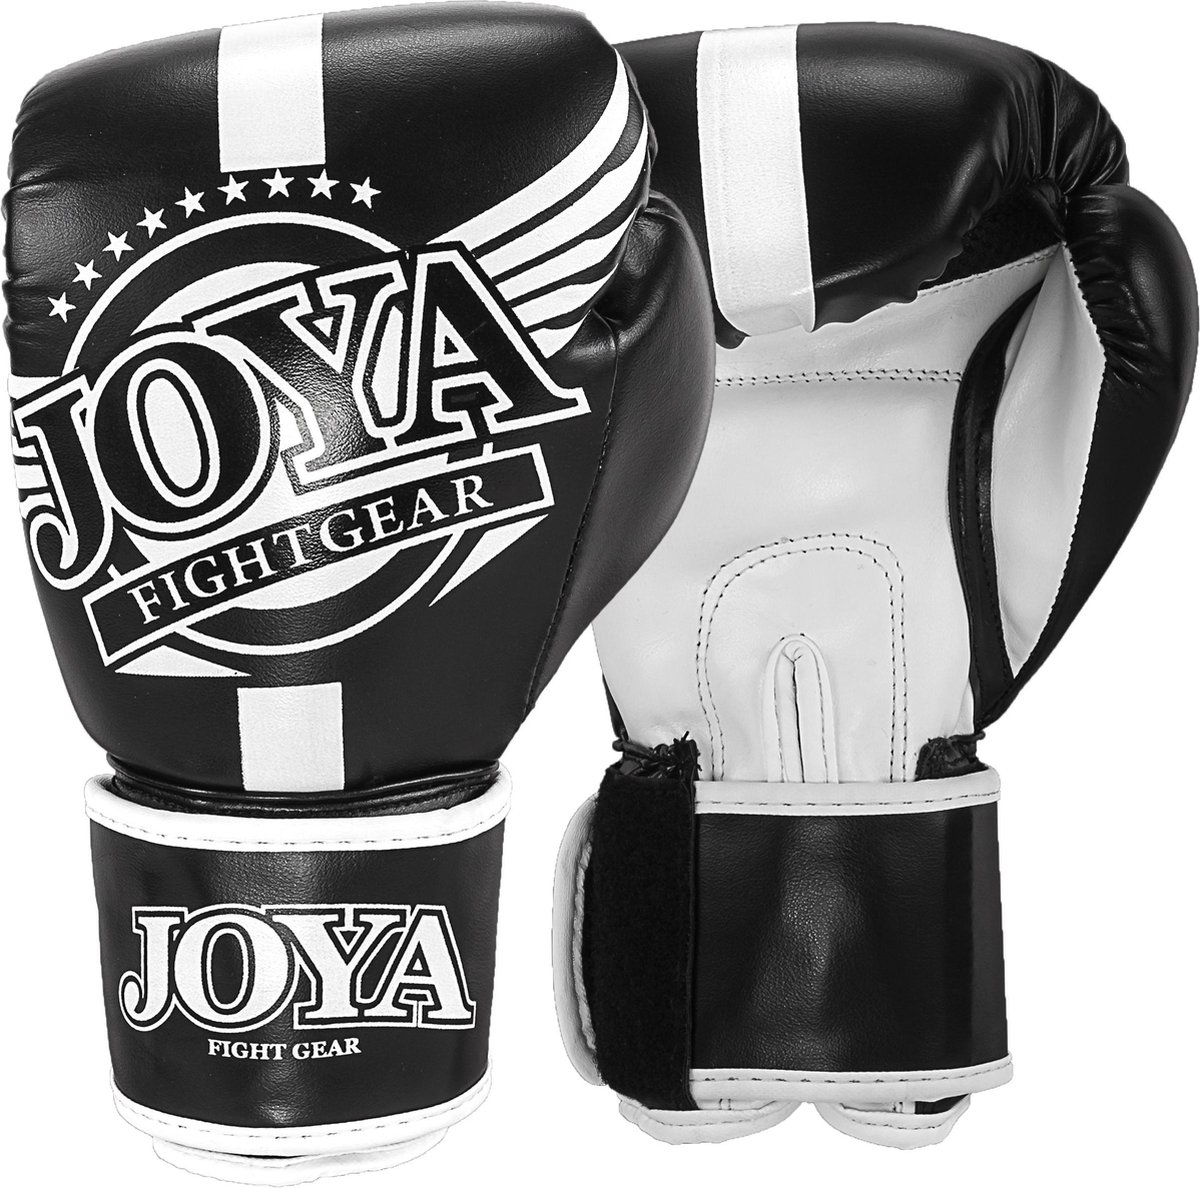 Joya Kickboxing Gloves Junior Vechtsporthandschoenen - Unisex - zwart/wit